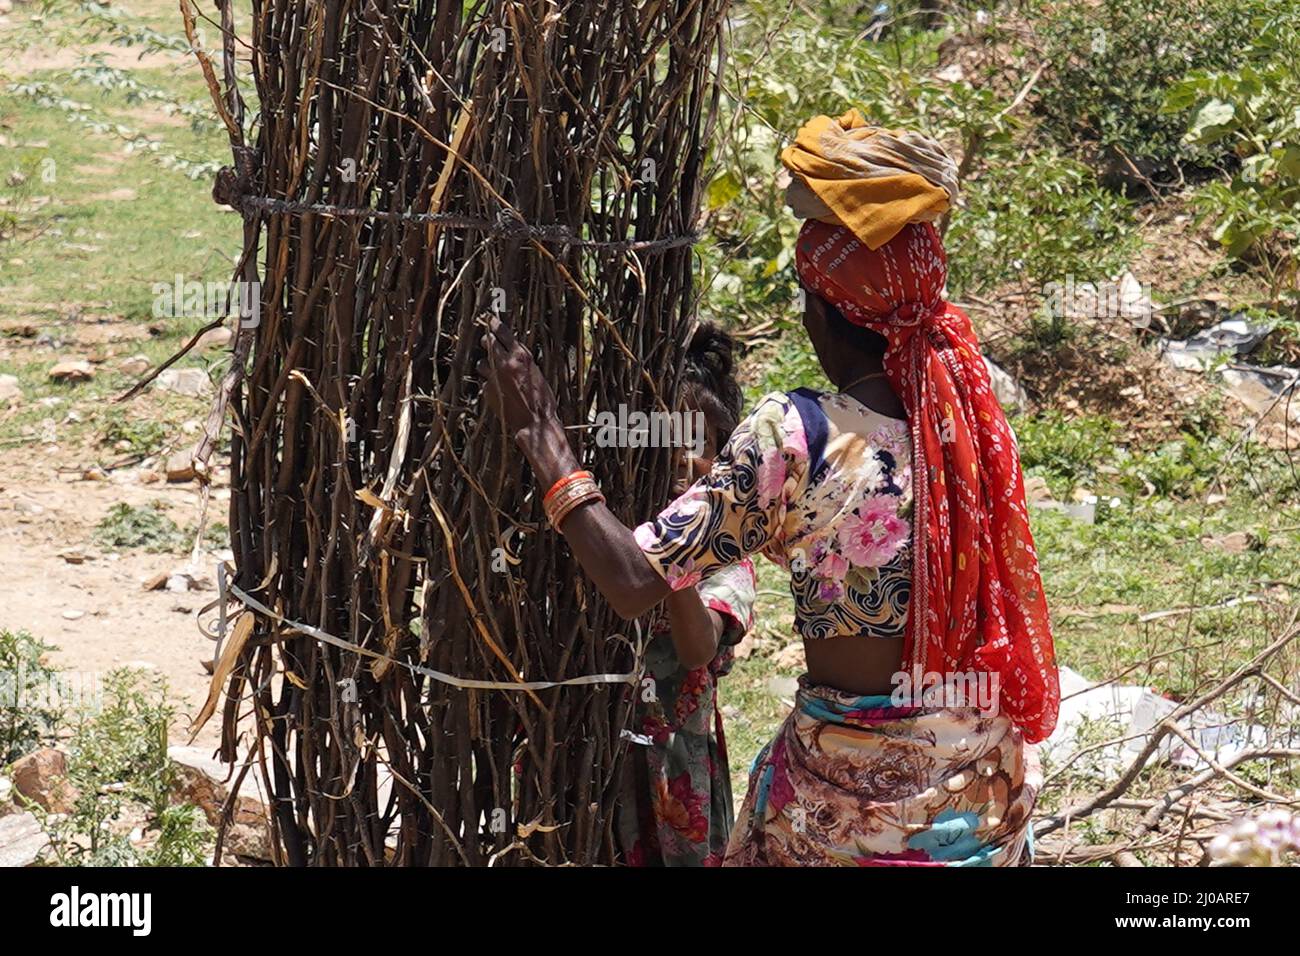 Un villager rurale della zona porta boschi di fuoco come lei torna a casa dopo la raccolta dalle sue foreste vicine per usarlo come le famiglie di carburante cottura appena periferia di Ajmer, Rajasthan, India il 24 maggio 2021. Foto di ABACAPRESS.COM Foto Stock